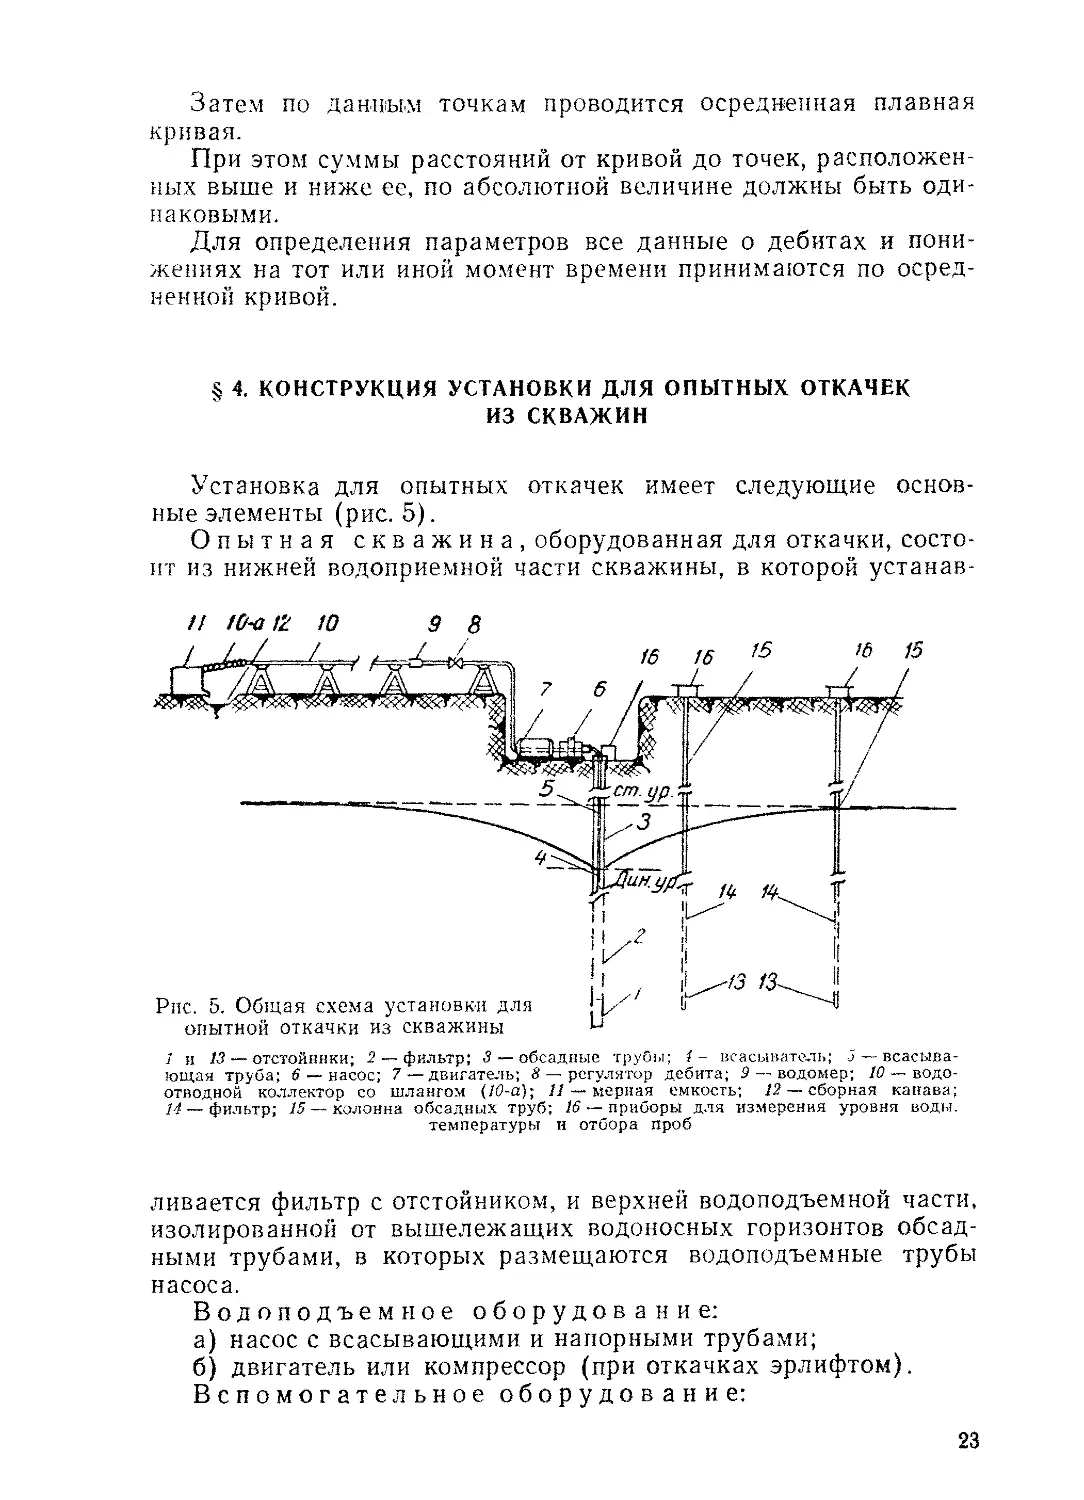 § 4. Конструкция установки для опытных откачек из скважин, 23